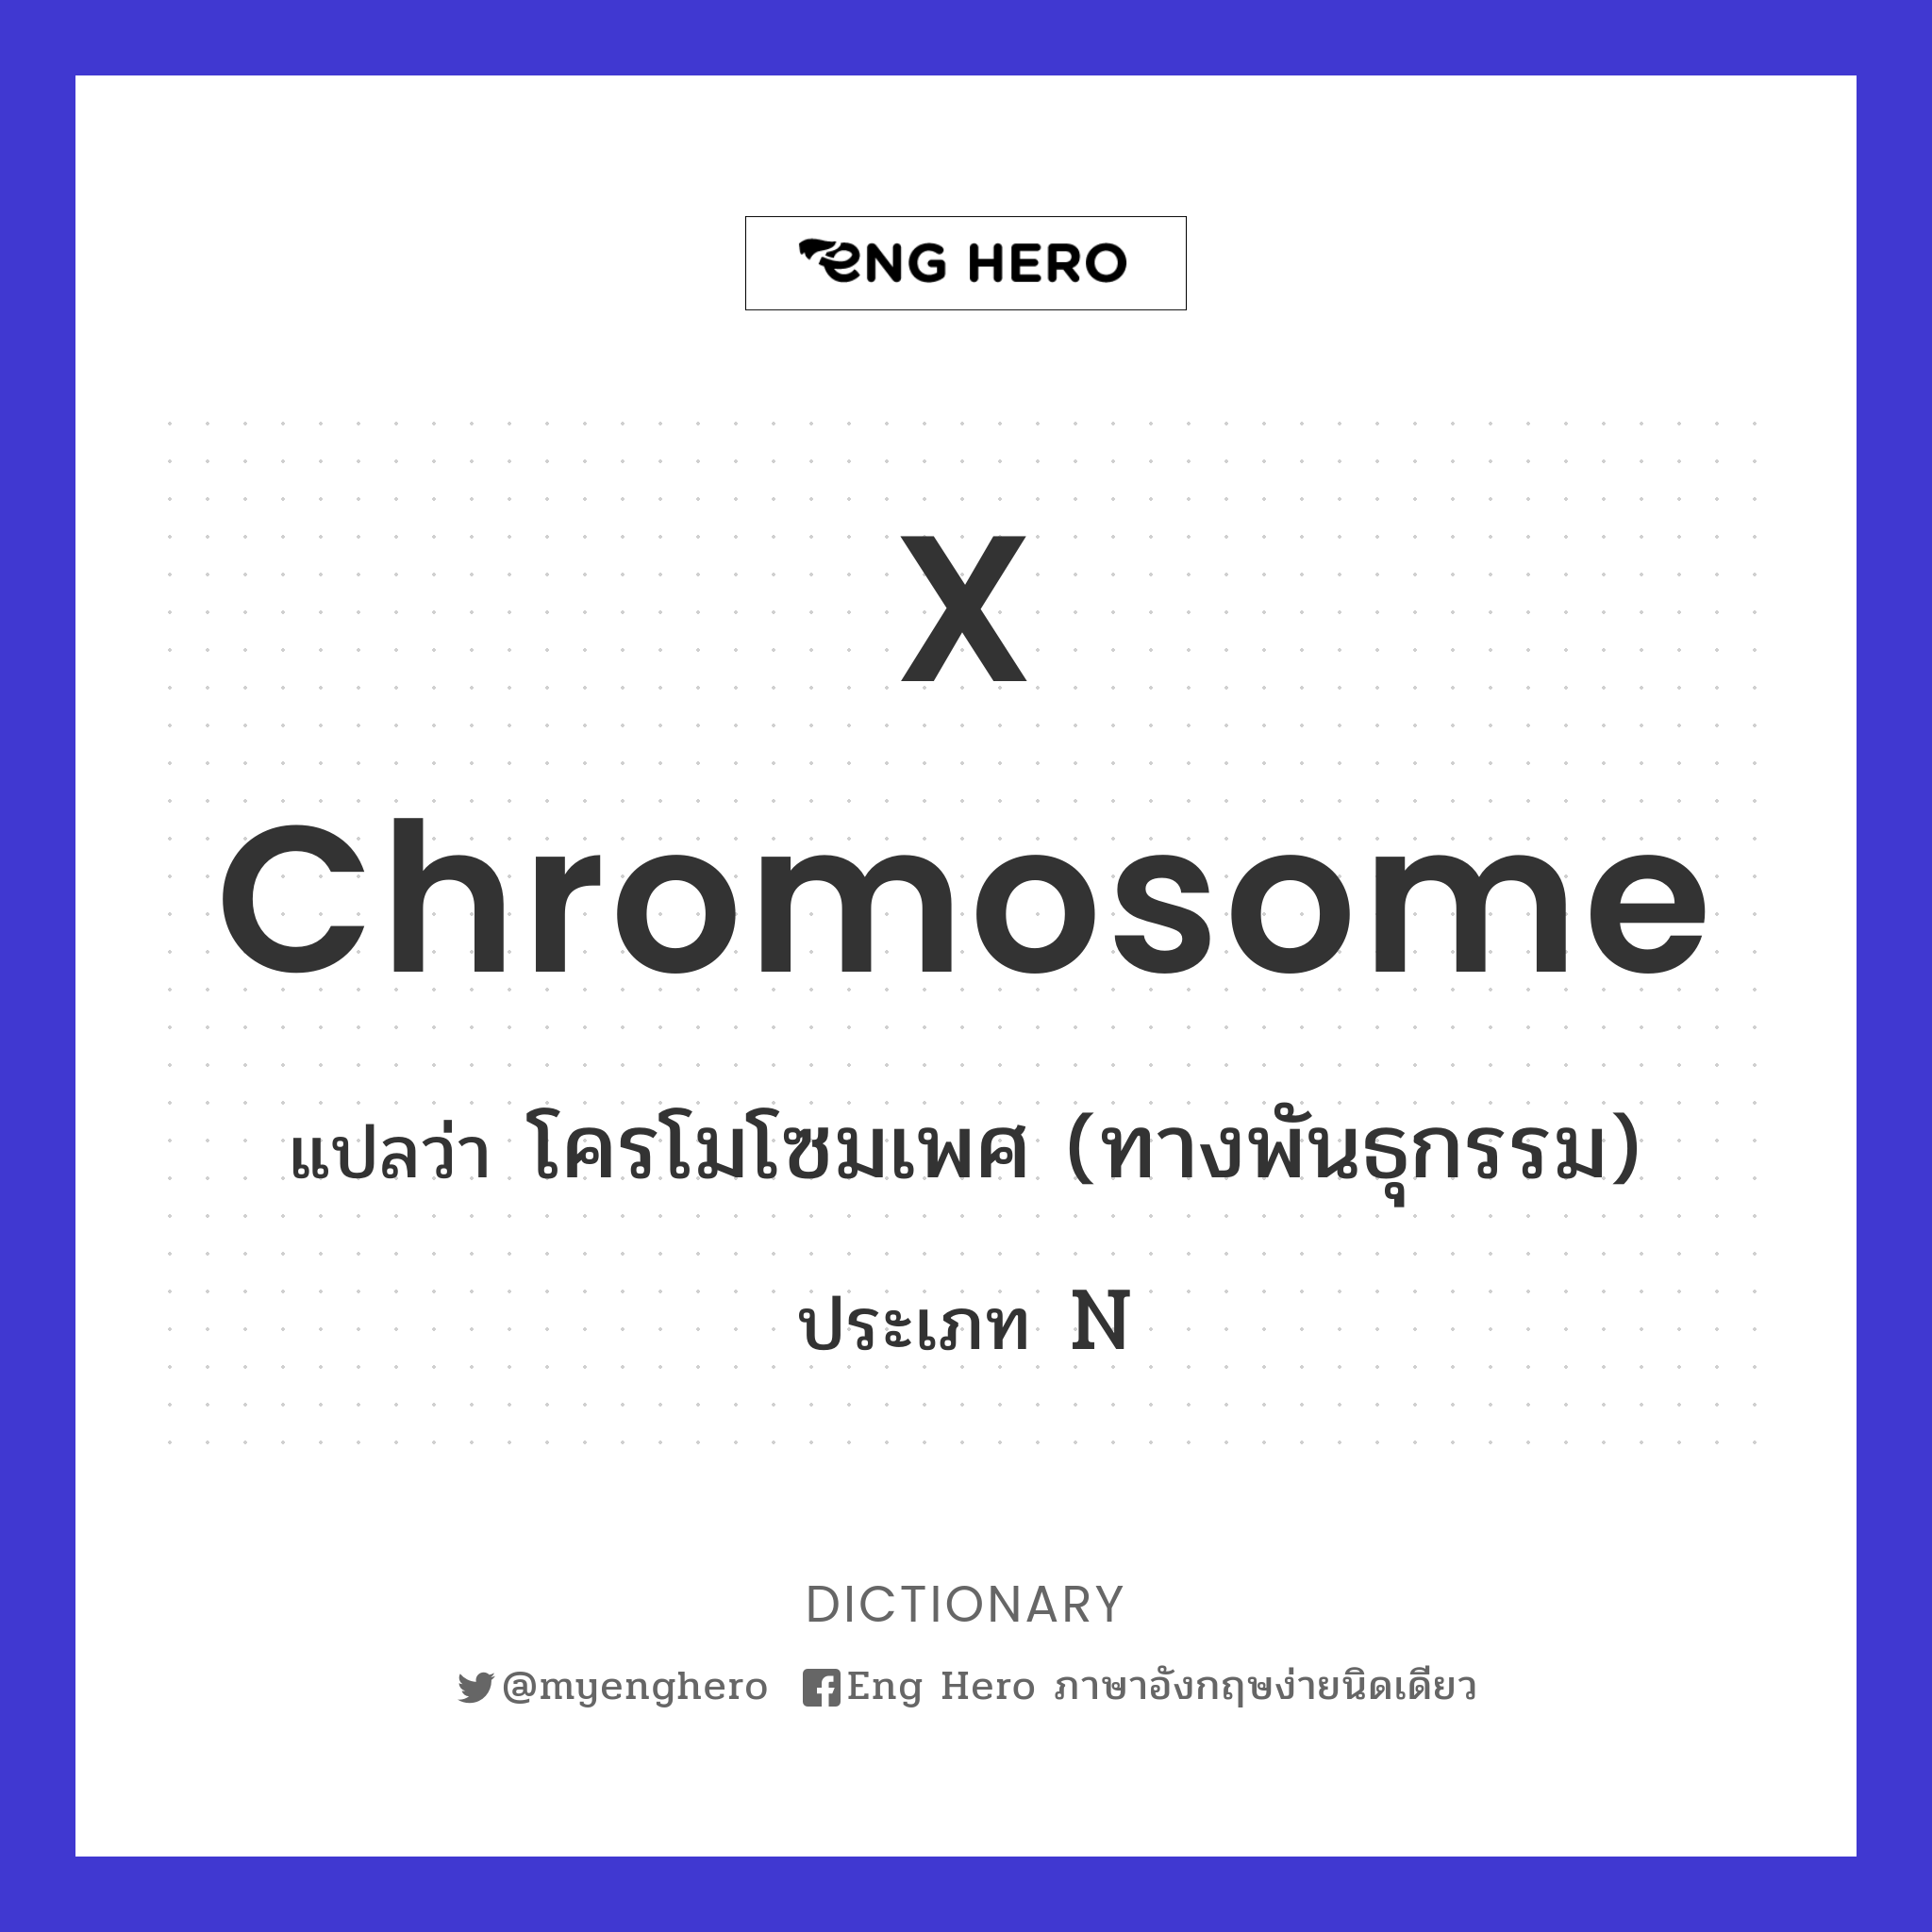 x chromosome